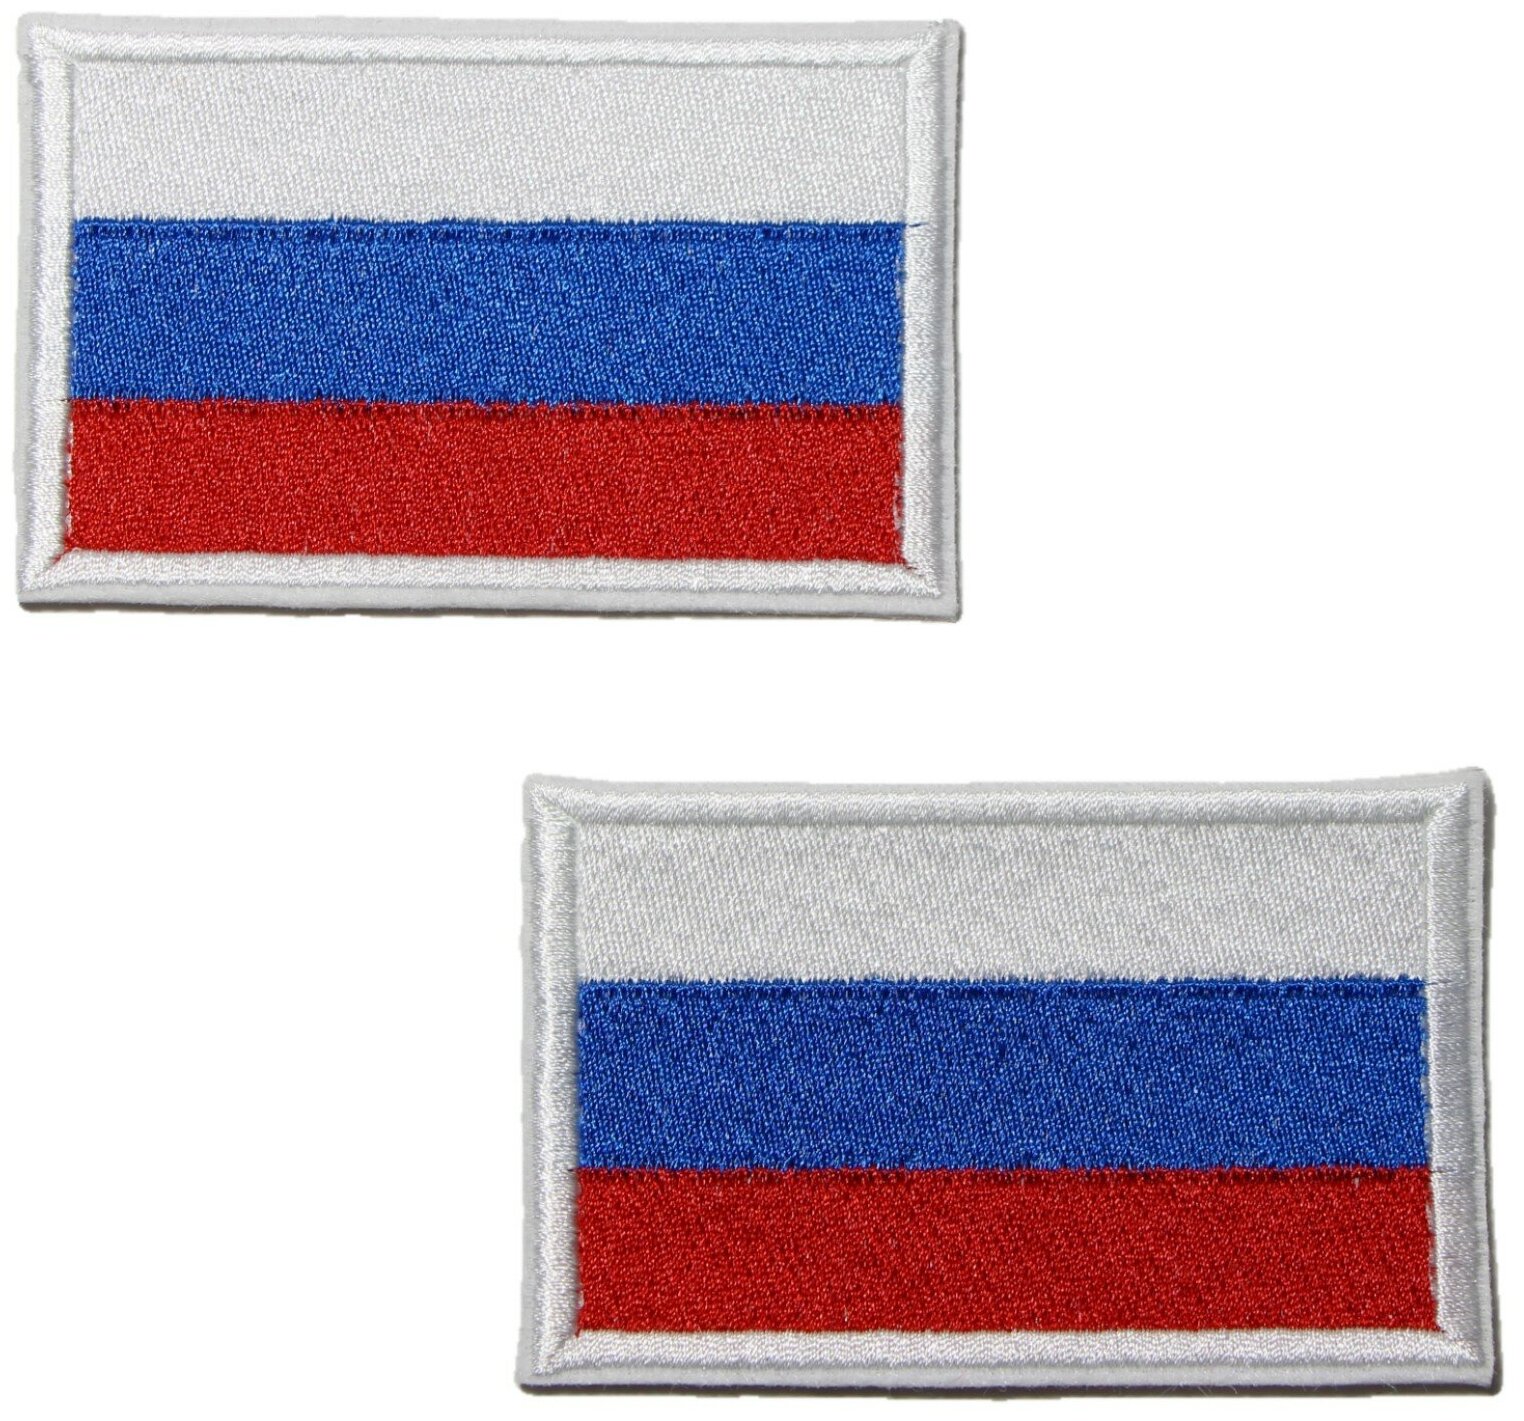 Термоаппликация, термонаклейка, текстильный патч, нашивка, шеврон 5 х 8 см с флагом России. Комплект из двух штук.